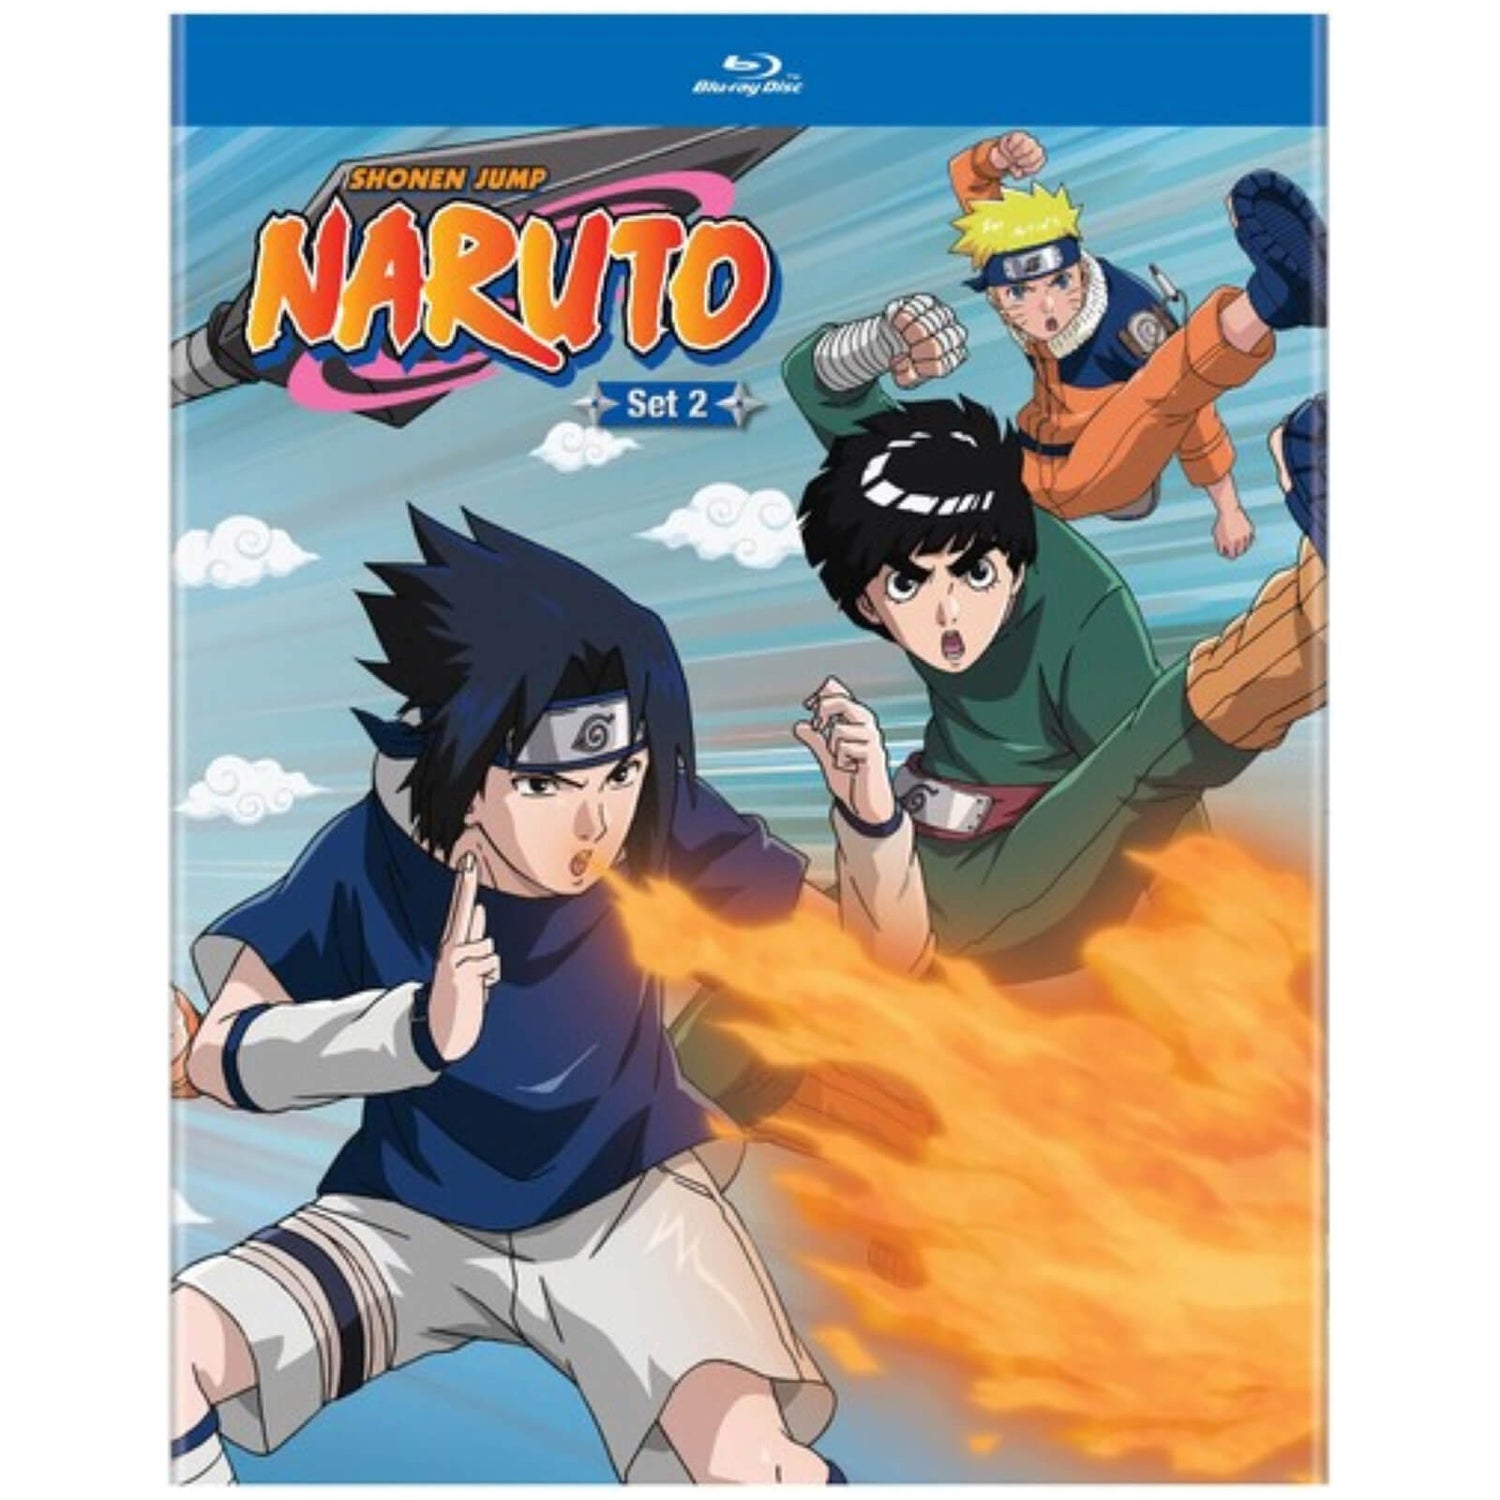 Naruto: Set 2